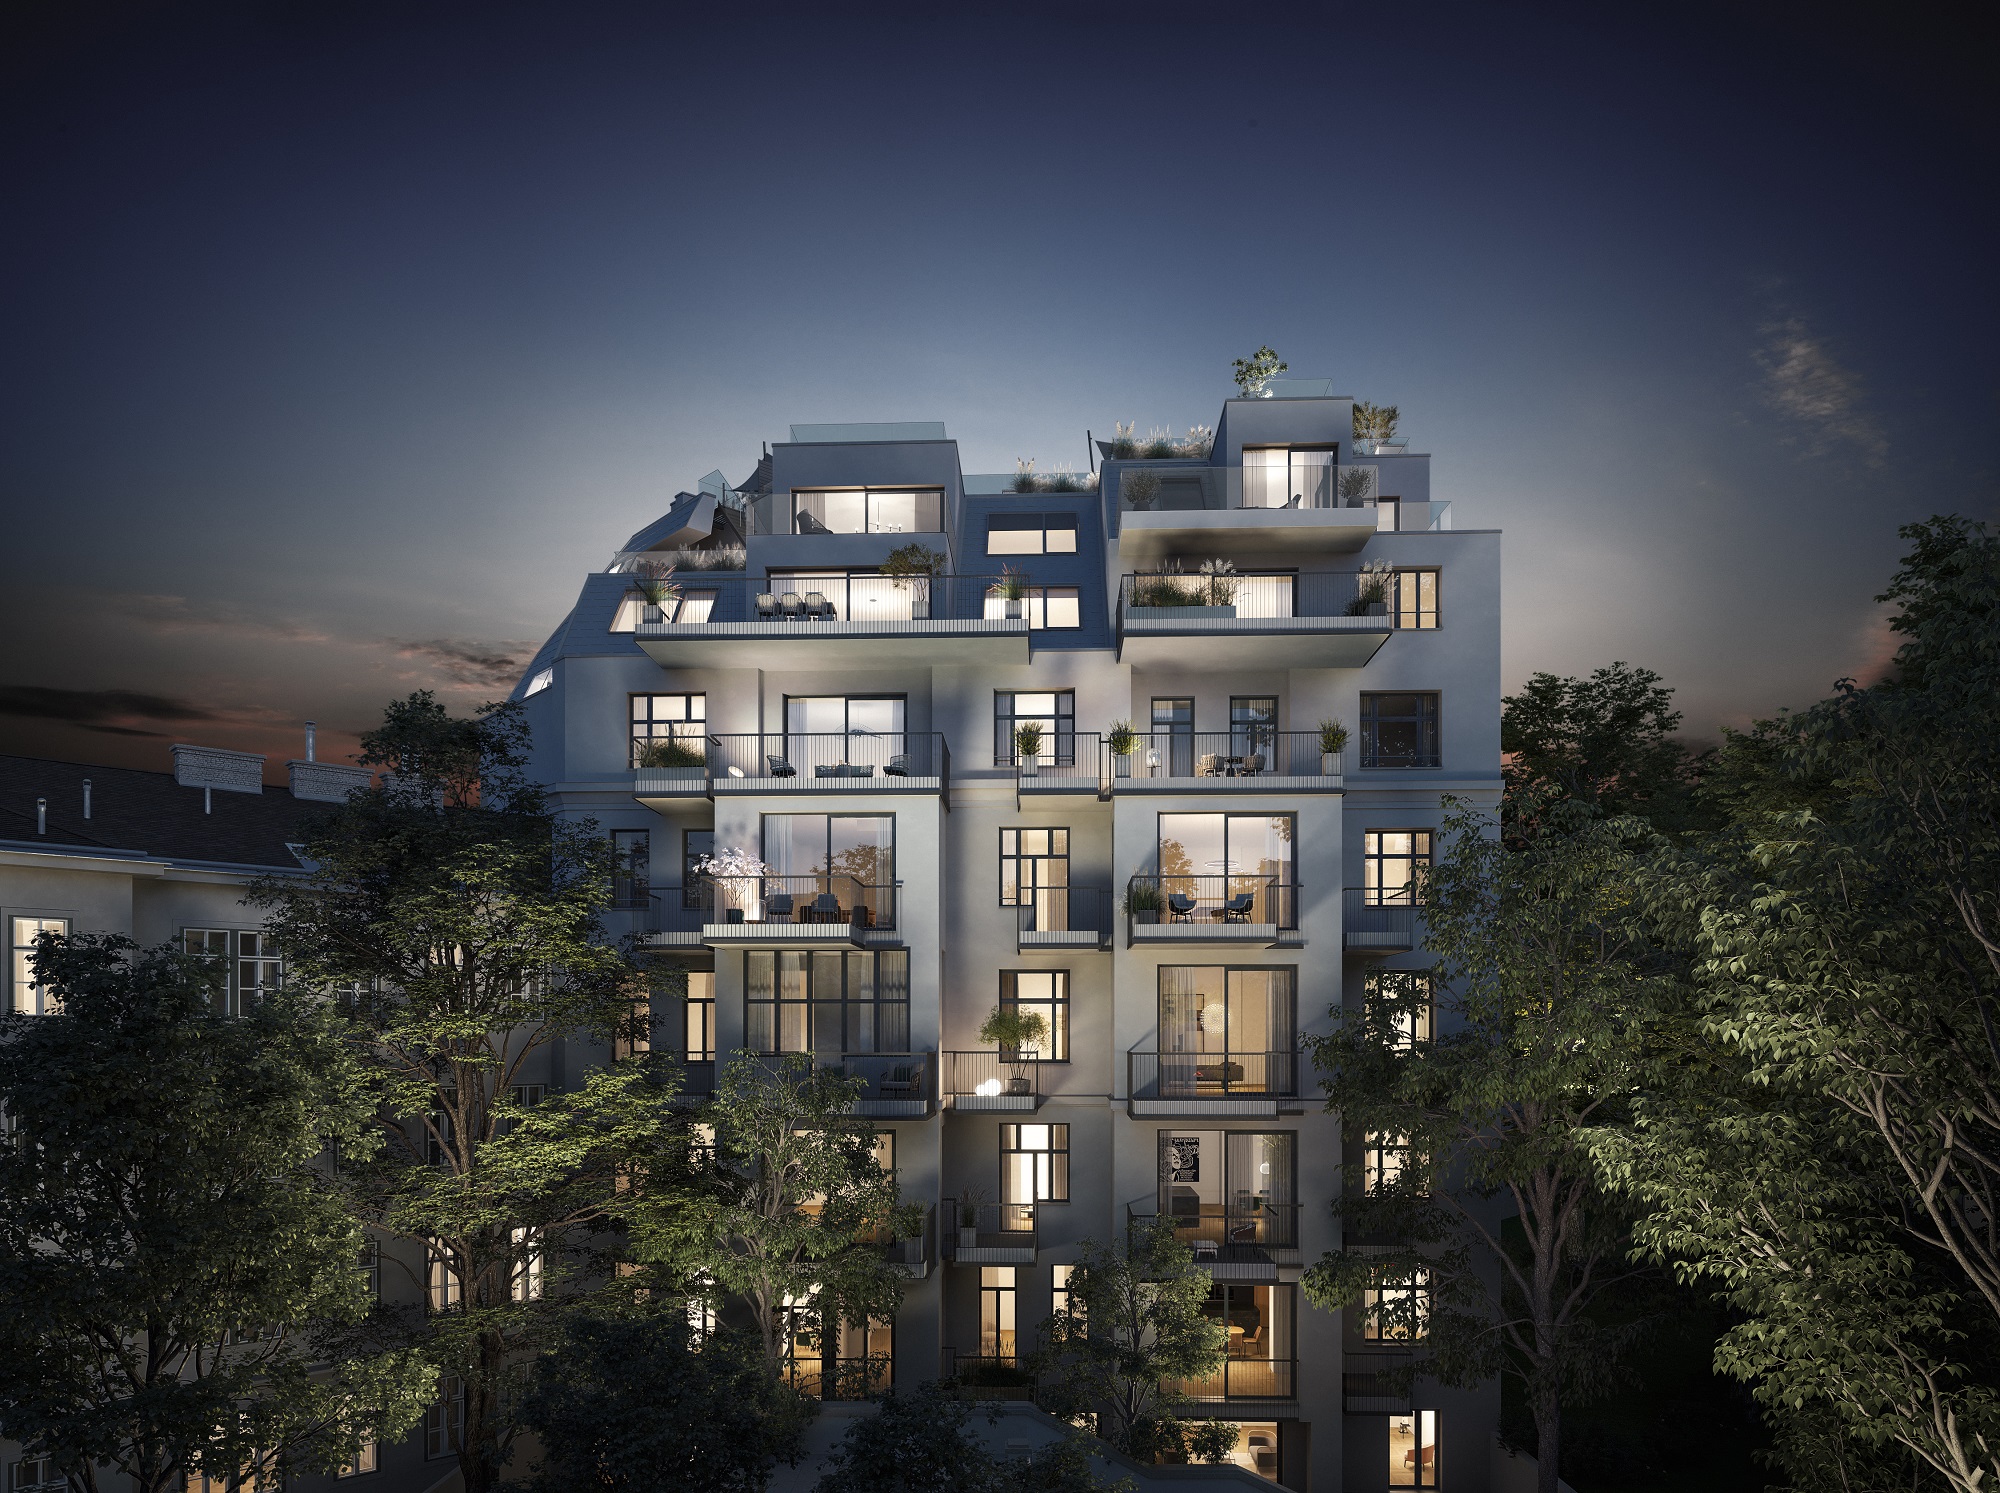 Das 3SI Projekt „The Masterpiece" in der Wiener Skodagasse konnte in der Kategorie „Residential Redevelopment/Renovation“ (Sanierung/Renovierung von Wohngebäuden) als bestes Projekt bestehen und gewann den International Property Award 2021.